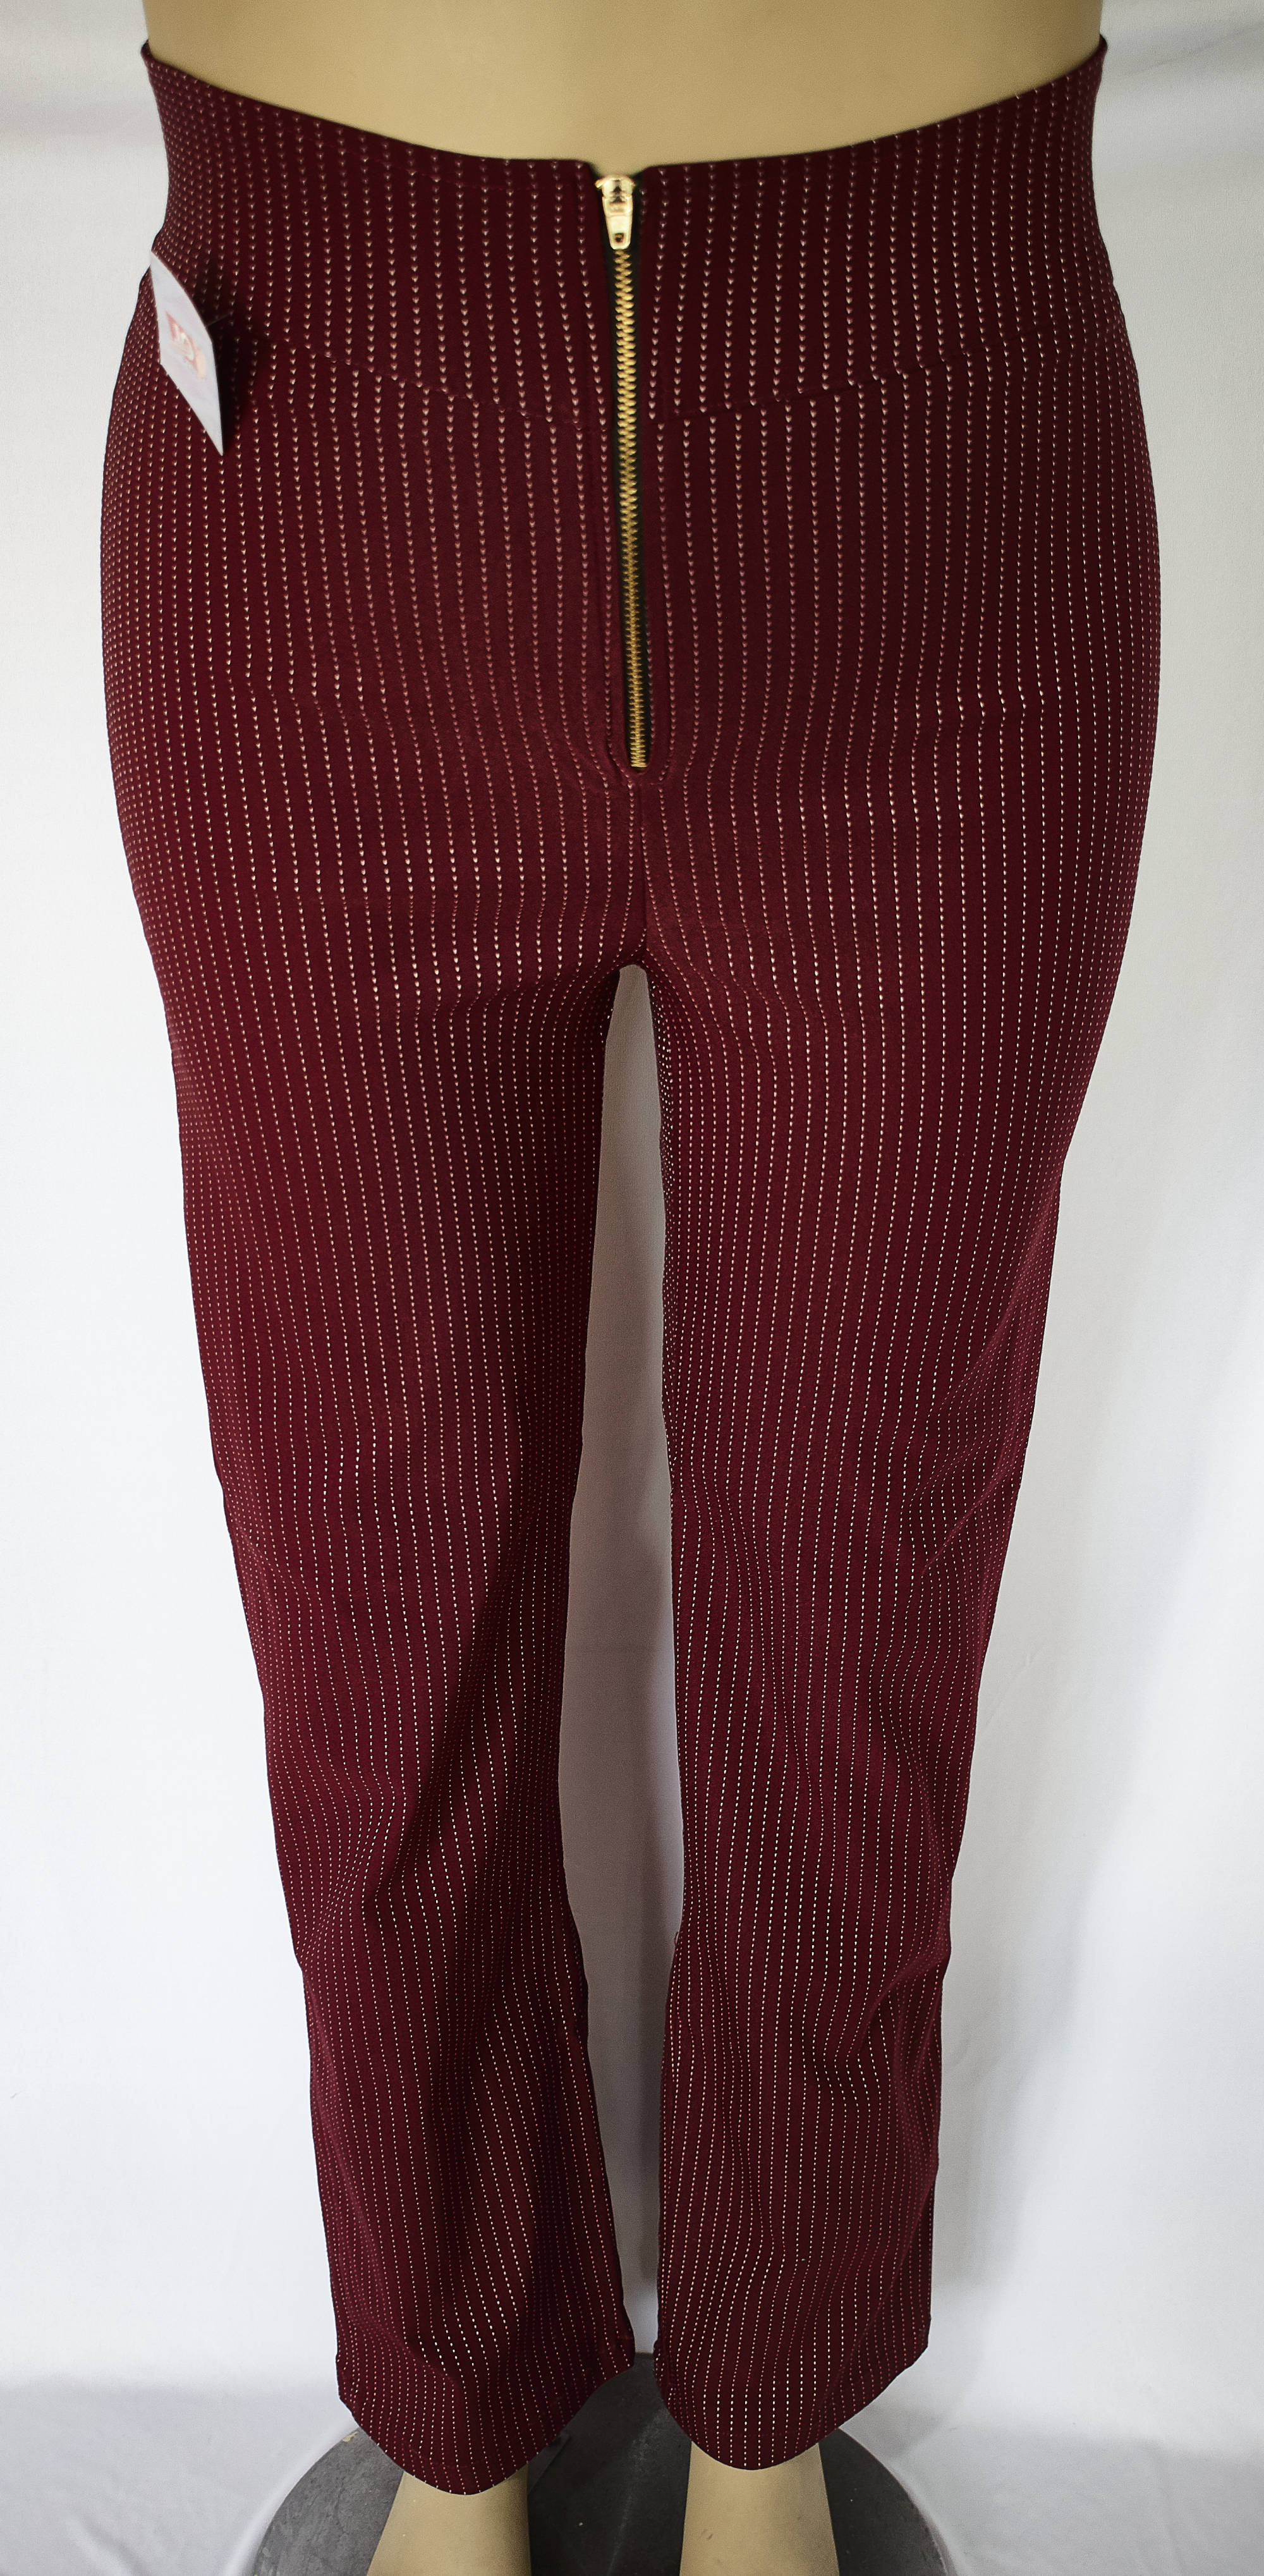 Pantalon tipo leggins color rojo Tallas 16 a la 22 de JoPlus Tallas Grandes